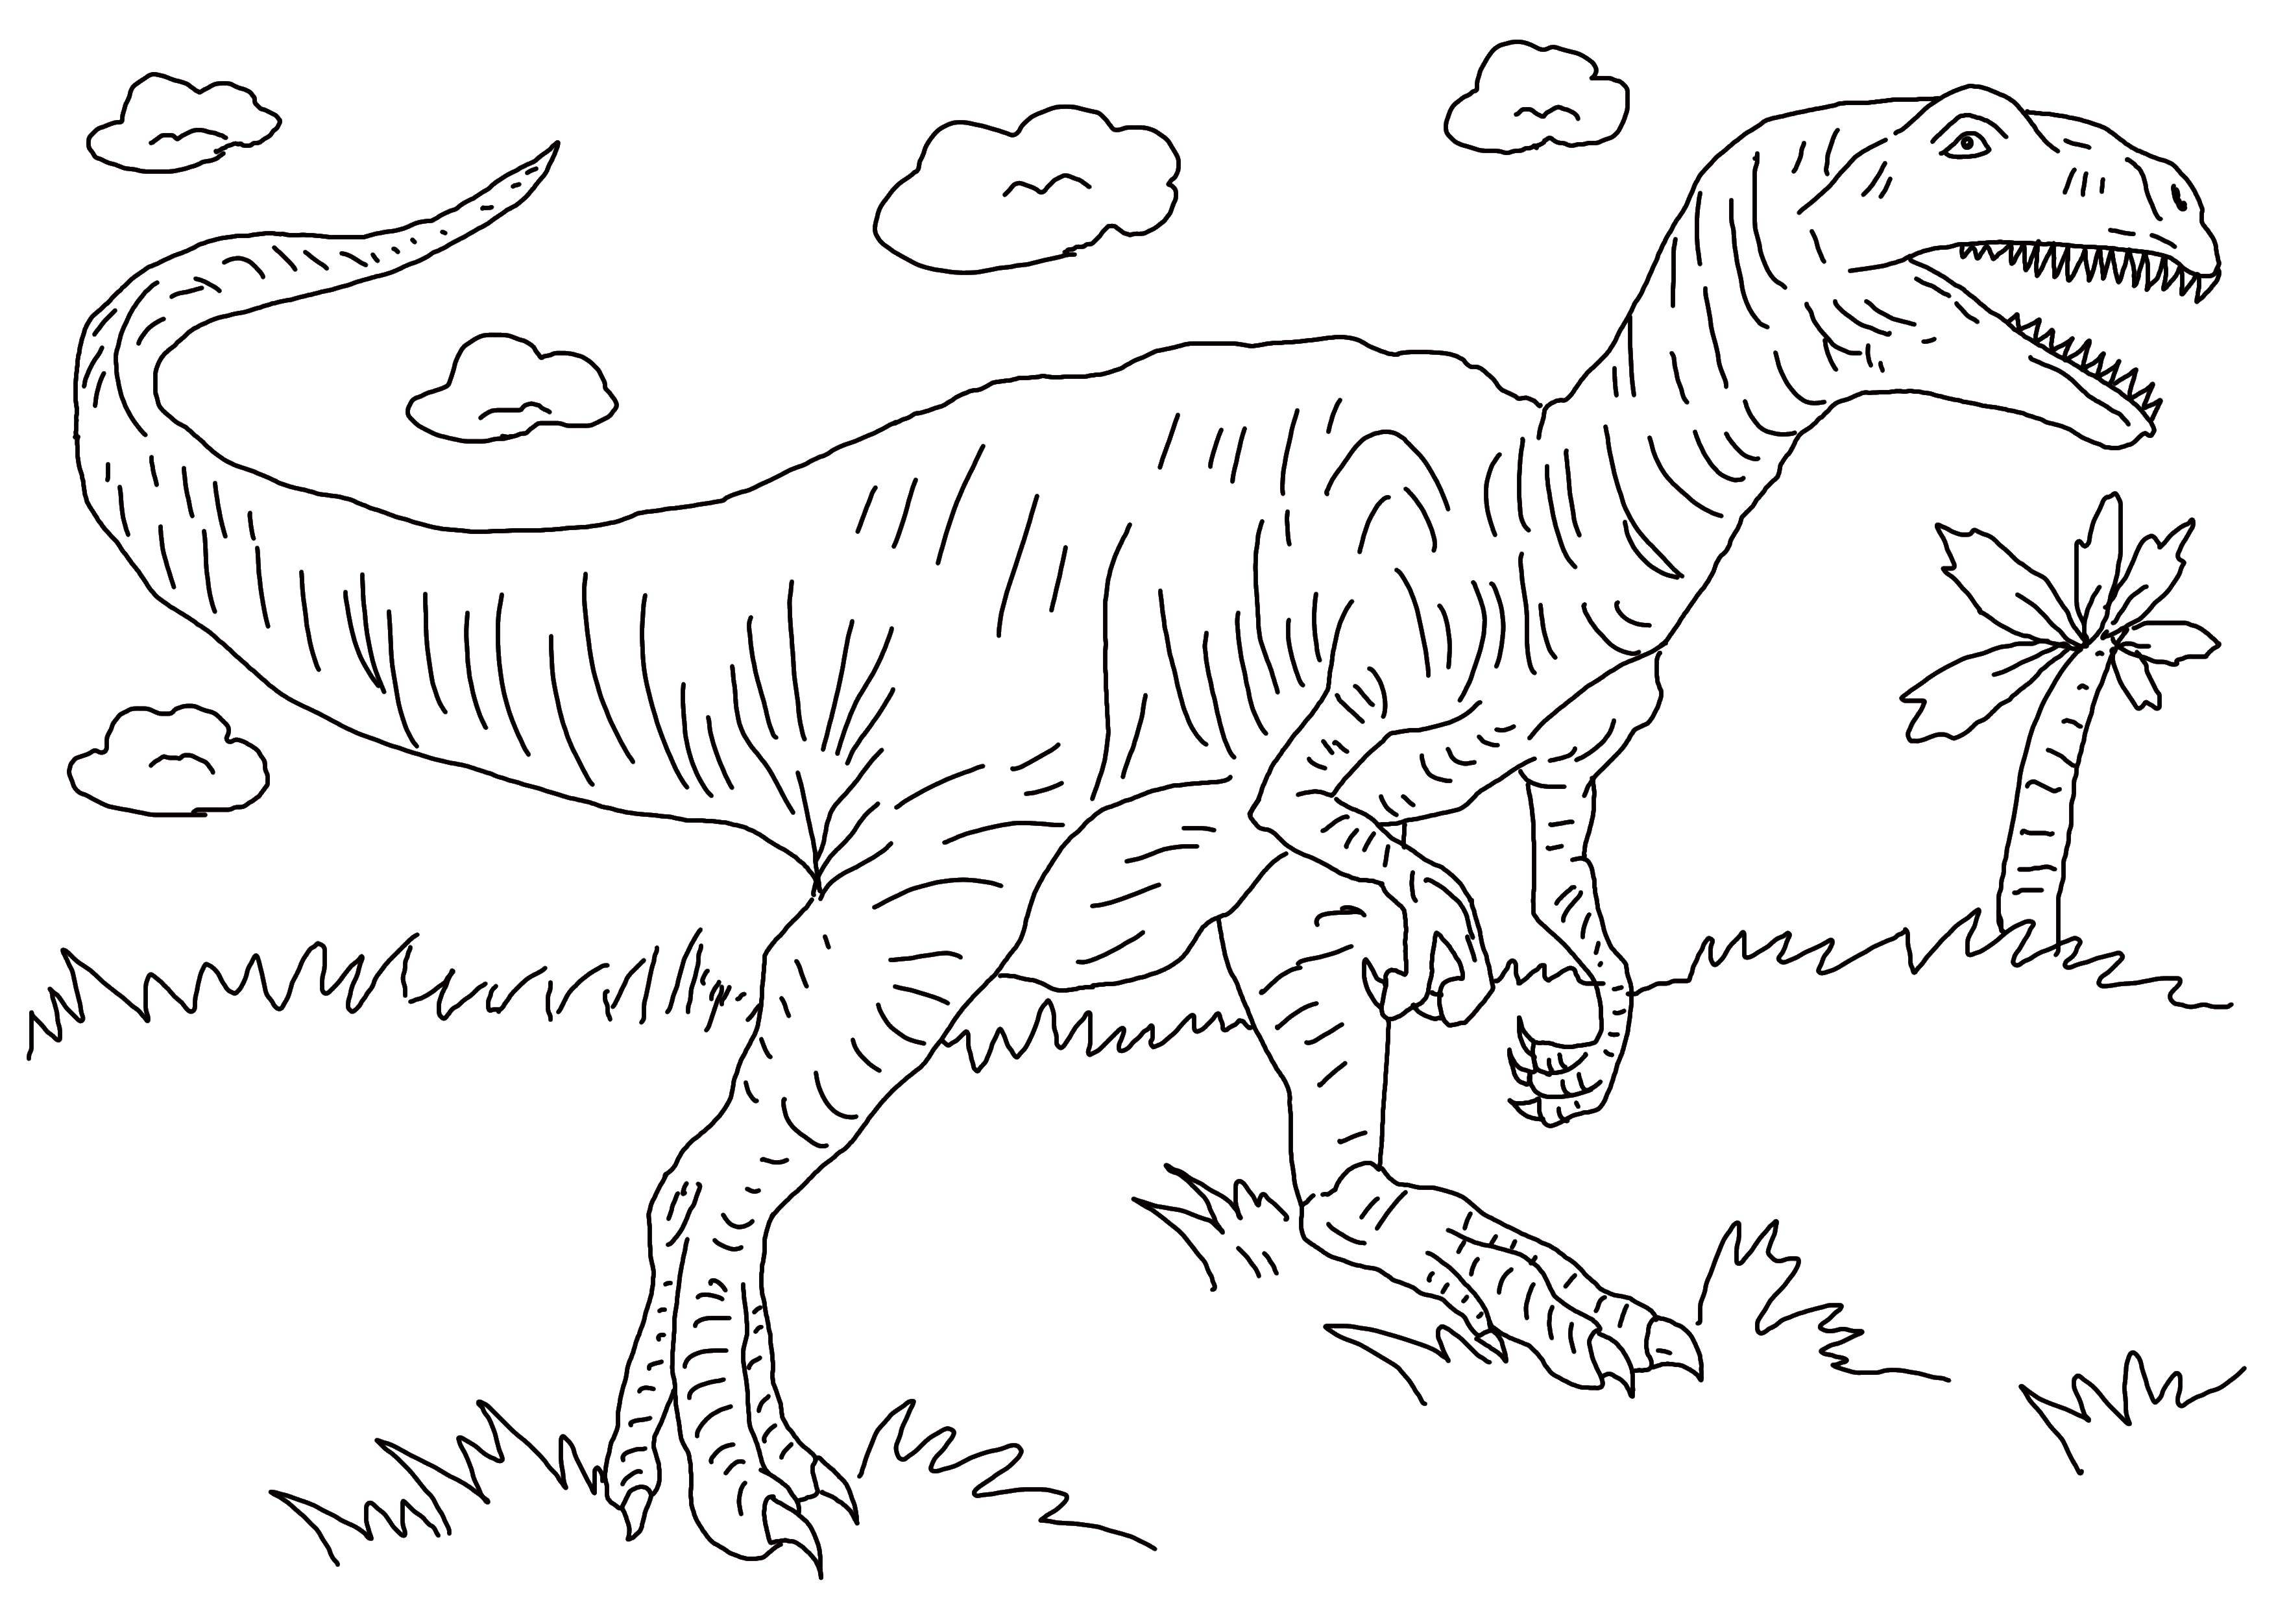 Динозавр раскраска распечатать а4. Динозавры / раскраска. Раскраски для мальчиков динозавры. Динозавр раскраска для детей. Динозавры для раскрашивания детям.